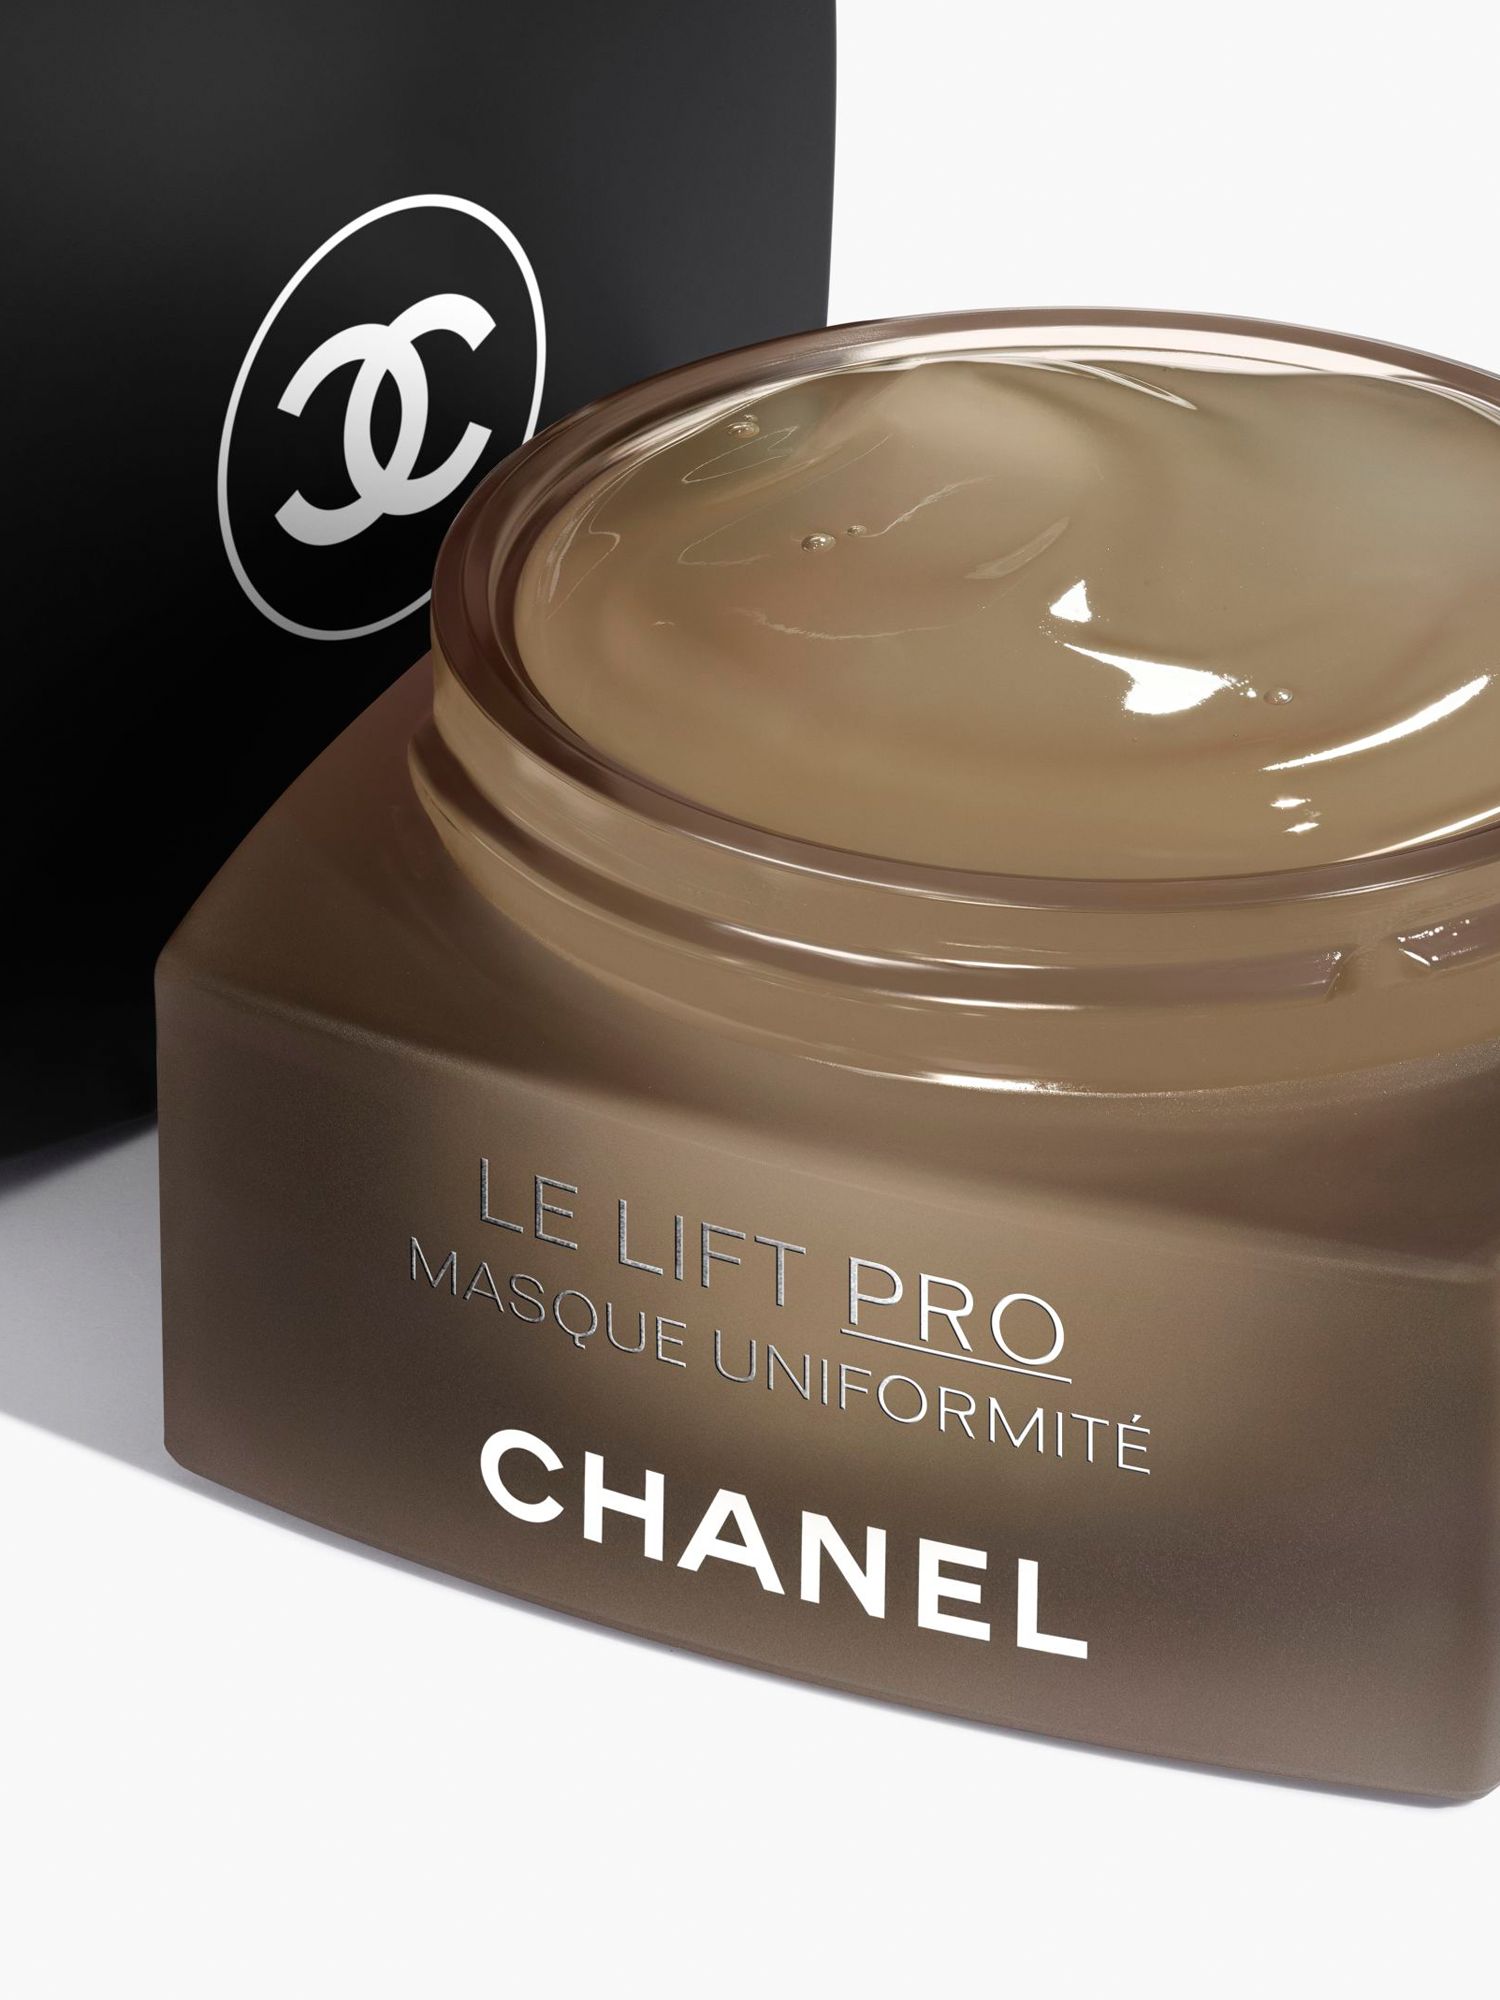 CHANEL Le Lift Pro Masque Uniformité Corrects - Redefines - Evens Jar, 50g 3